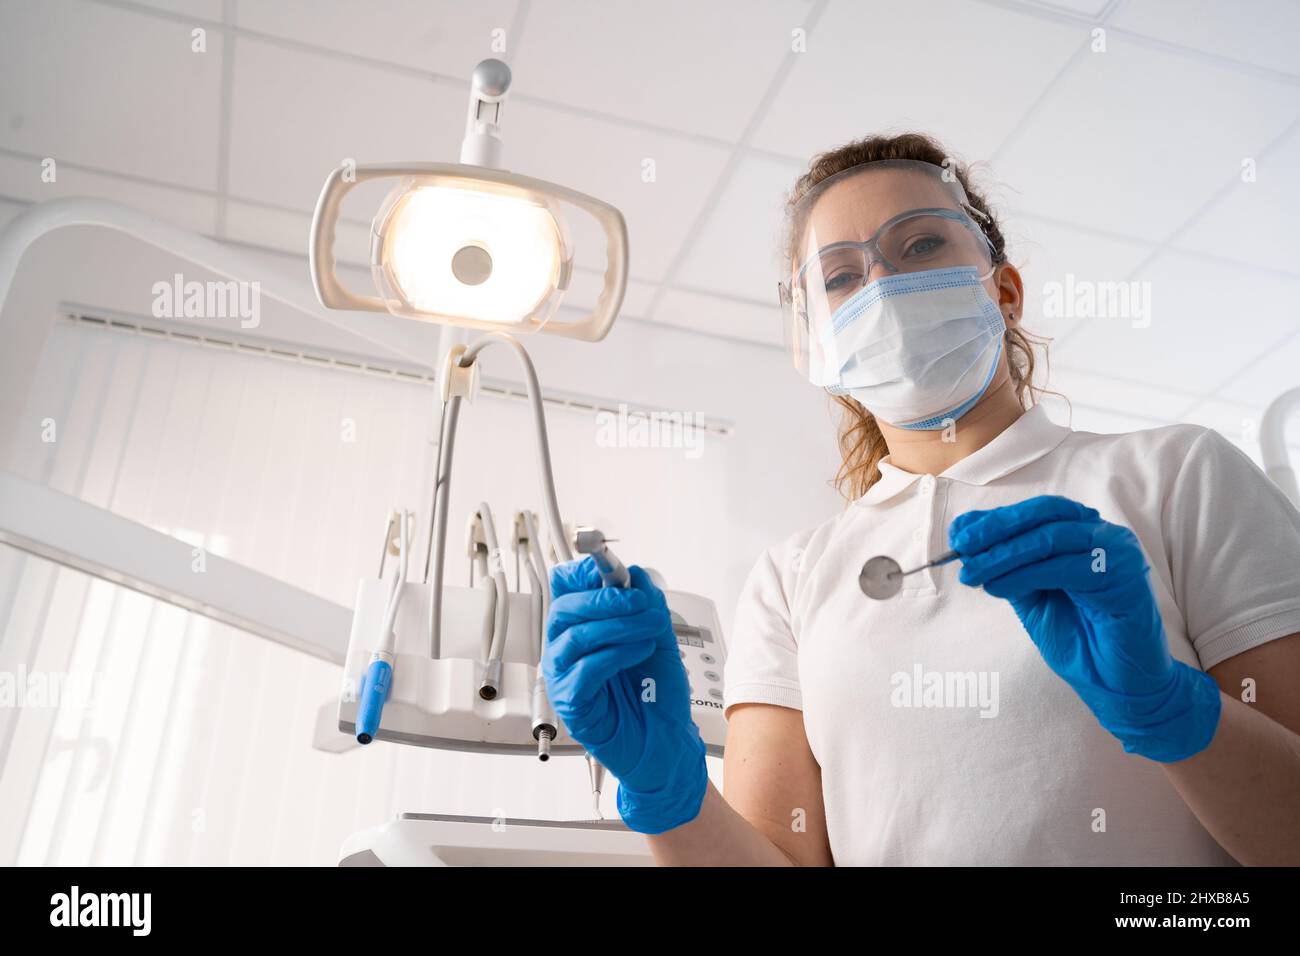 Femme dentiste seule tenant des instruments dentaires, regardant la caméra. Point de vue personnel ou patient, POV. Concept de traitement dentaire. Espace de copie. Banque D'Images